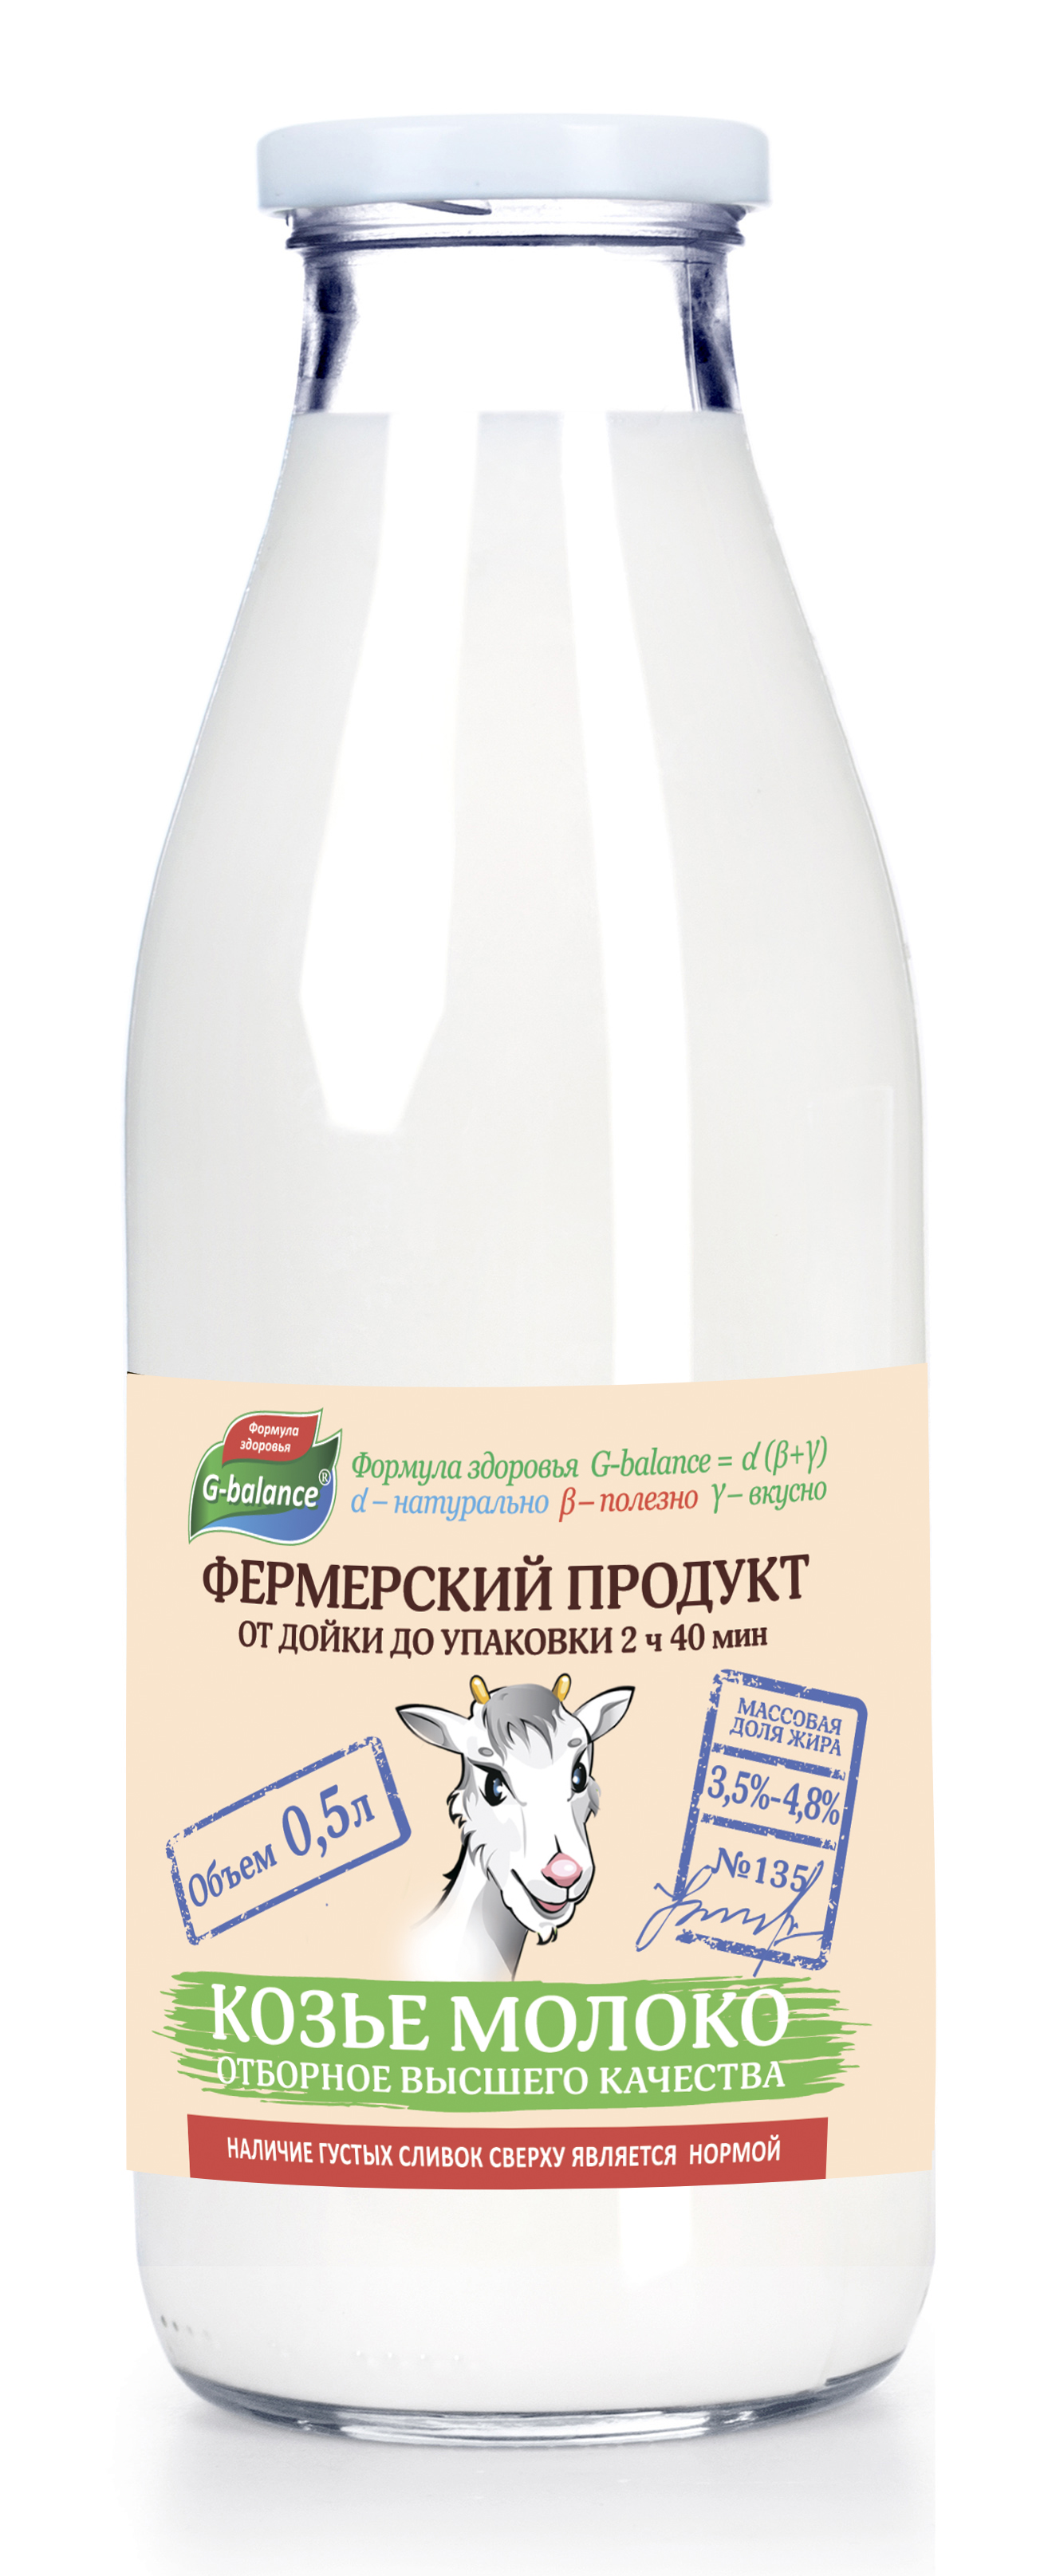 Молоко G-balance козье, пастеризованное, 3,5-4,8%, 500 мл